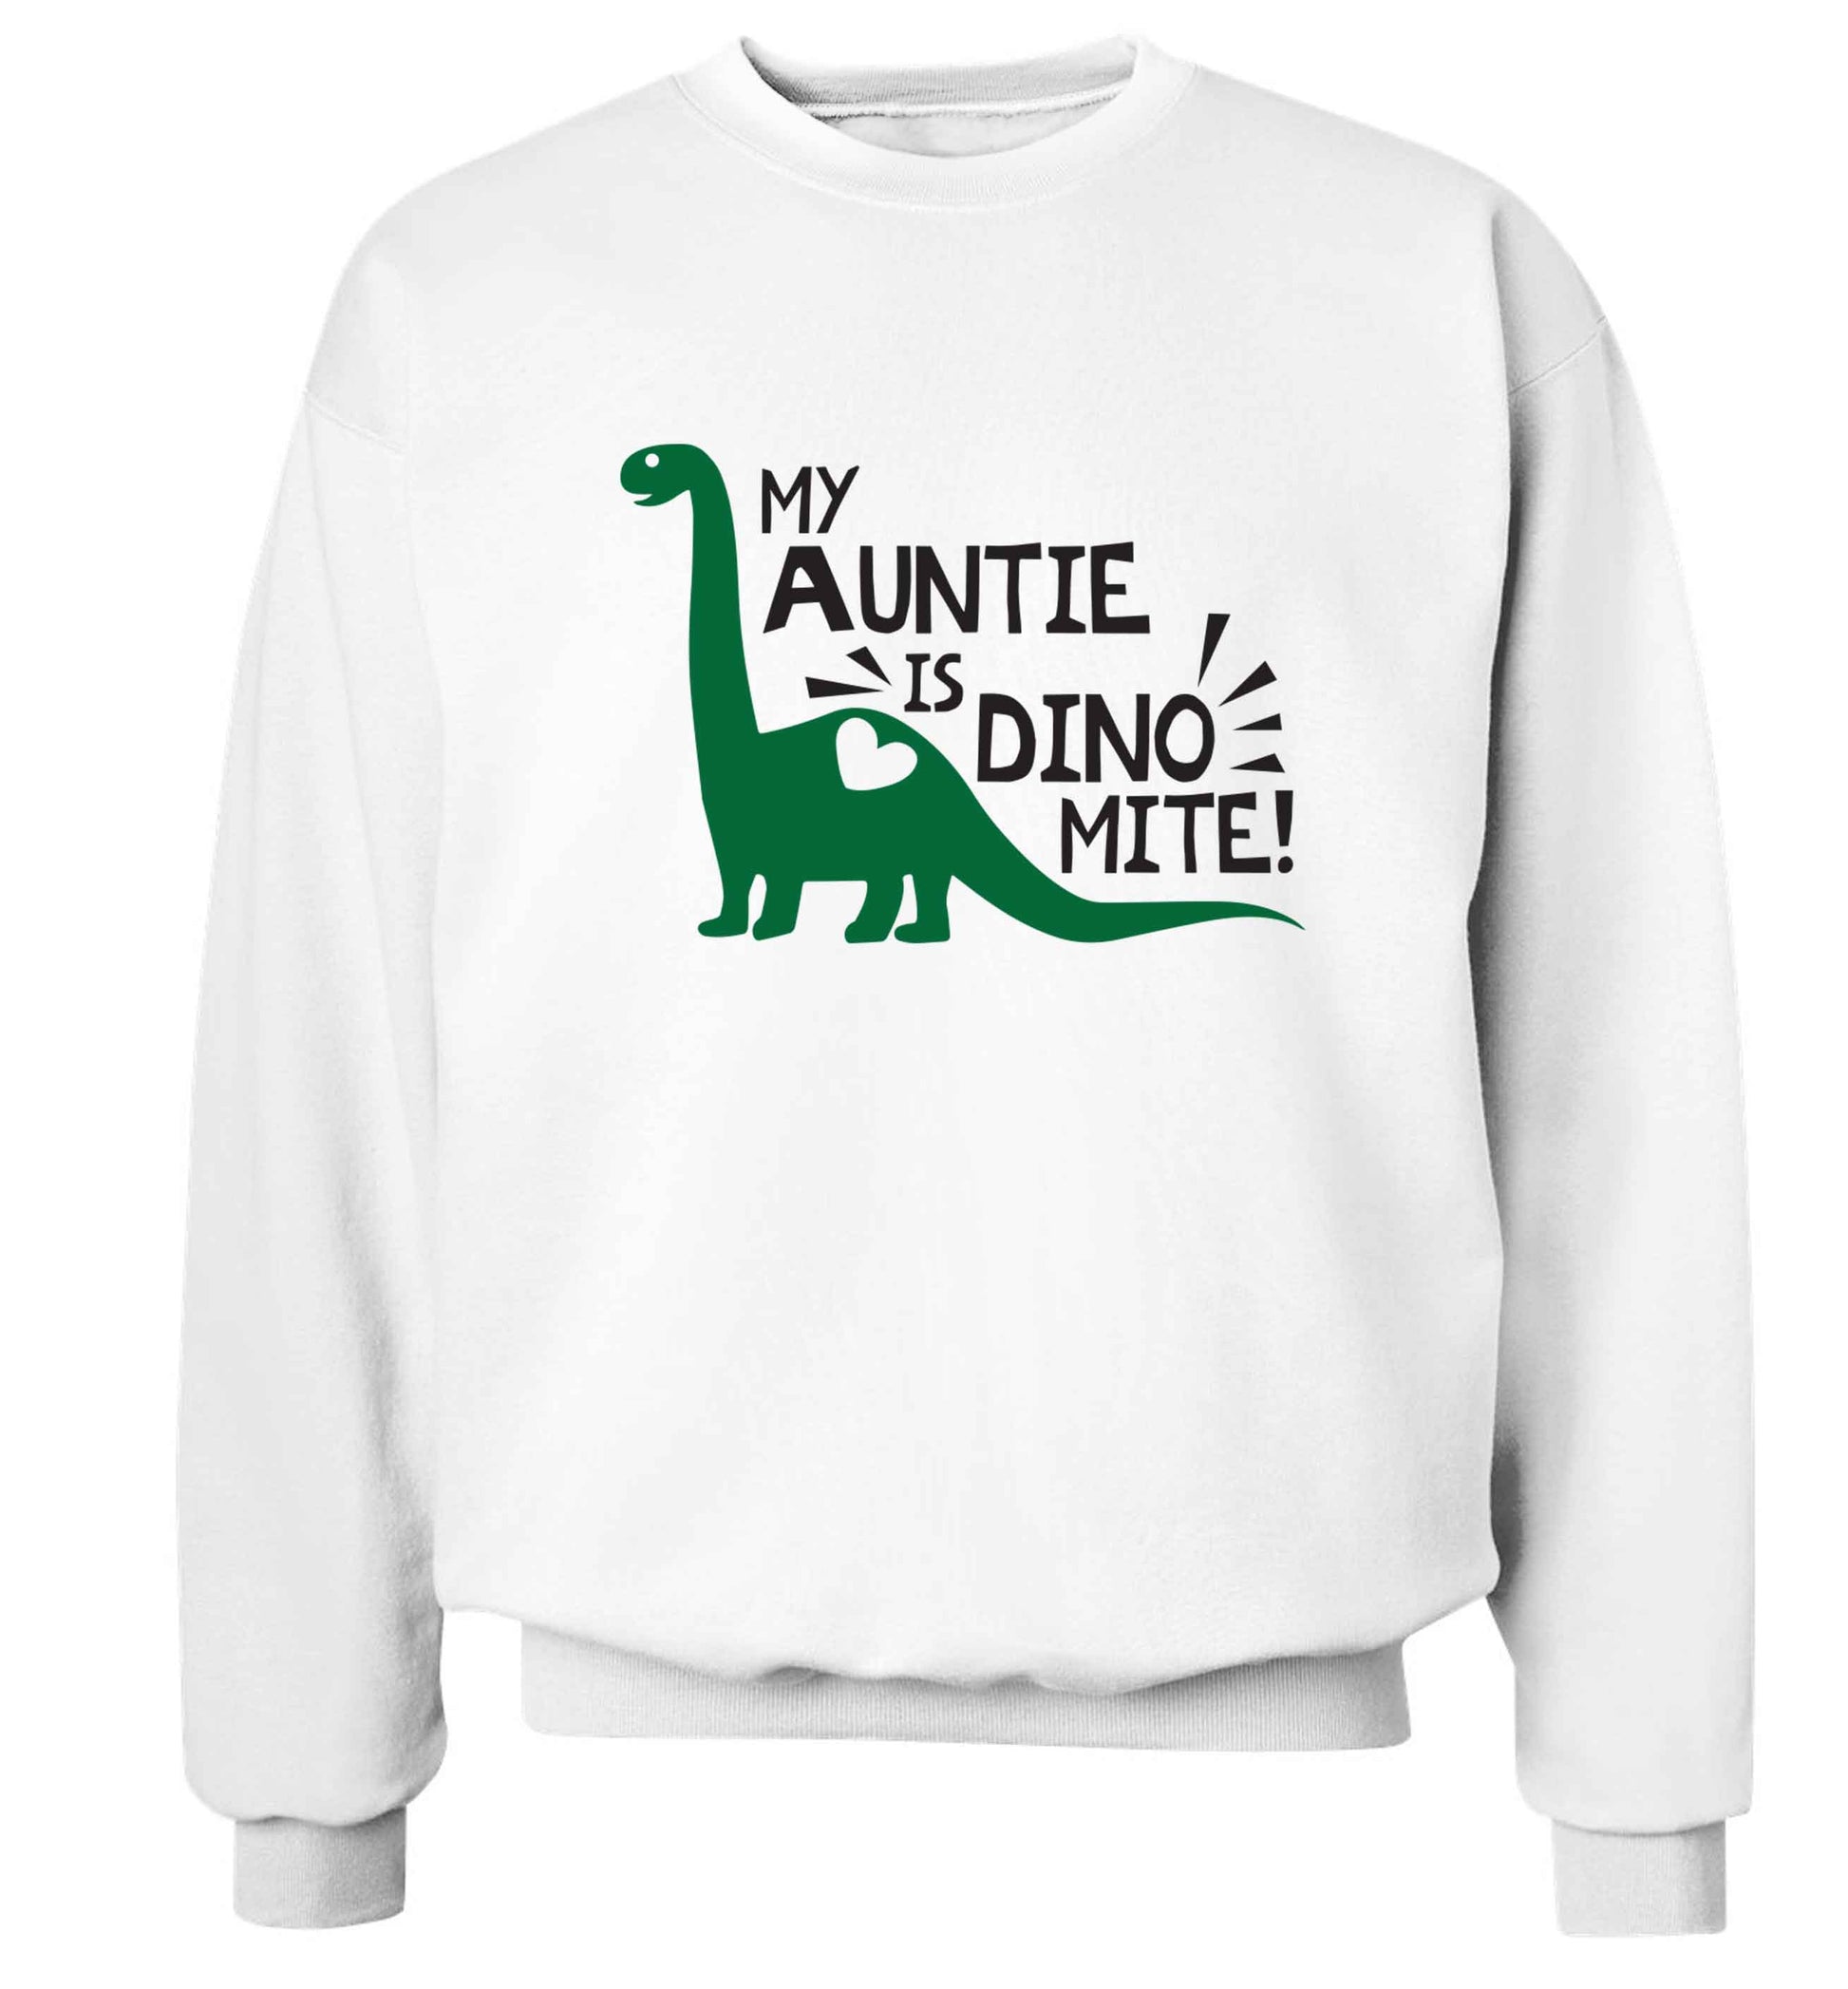 My auntie is dinomite! Adult's unisex white Sweater 2XL